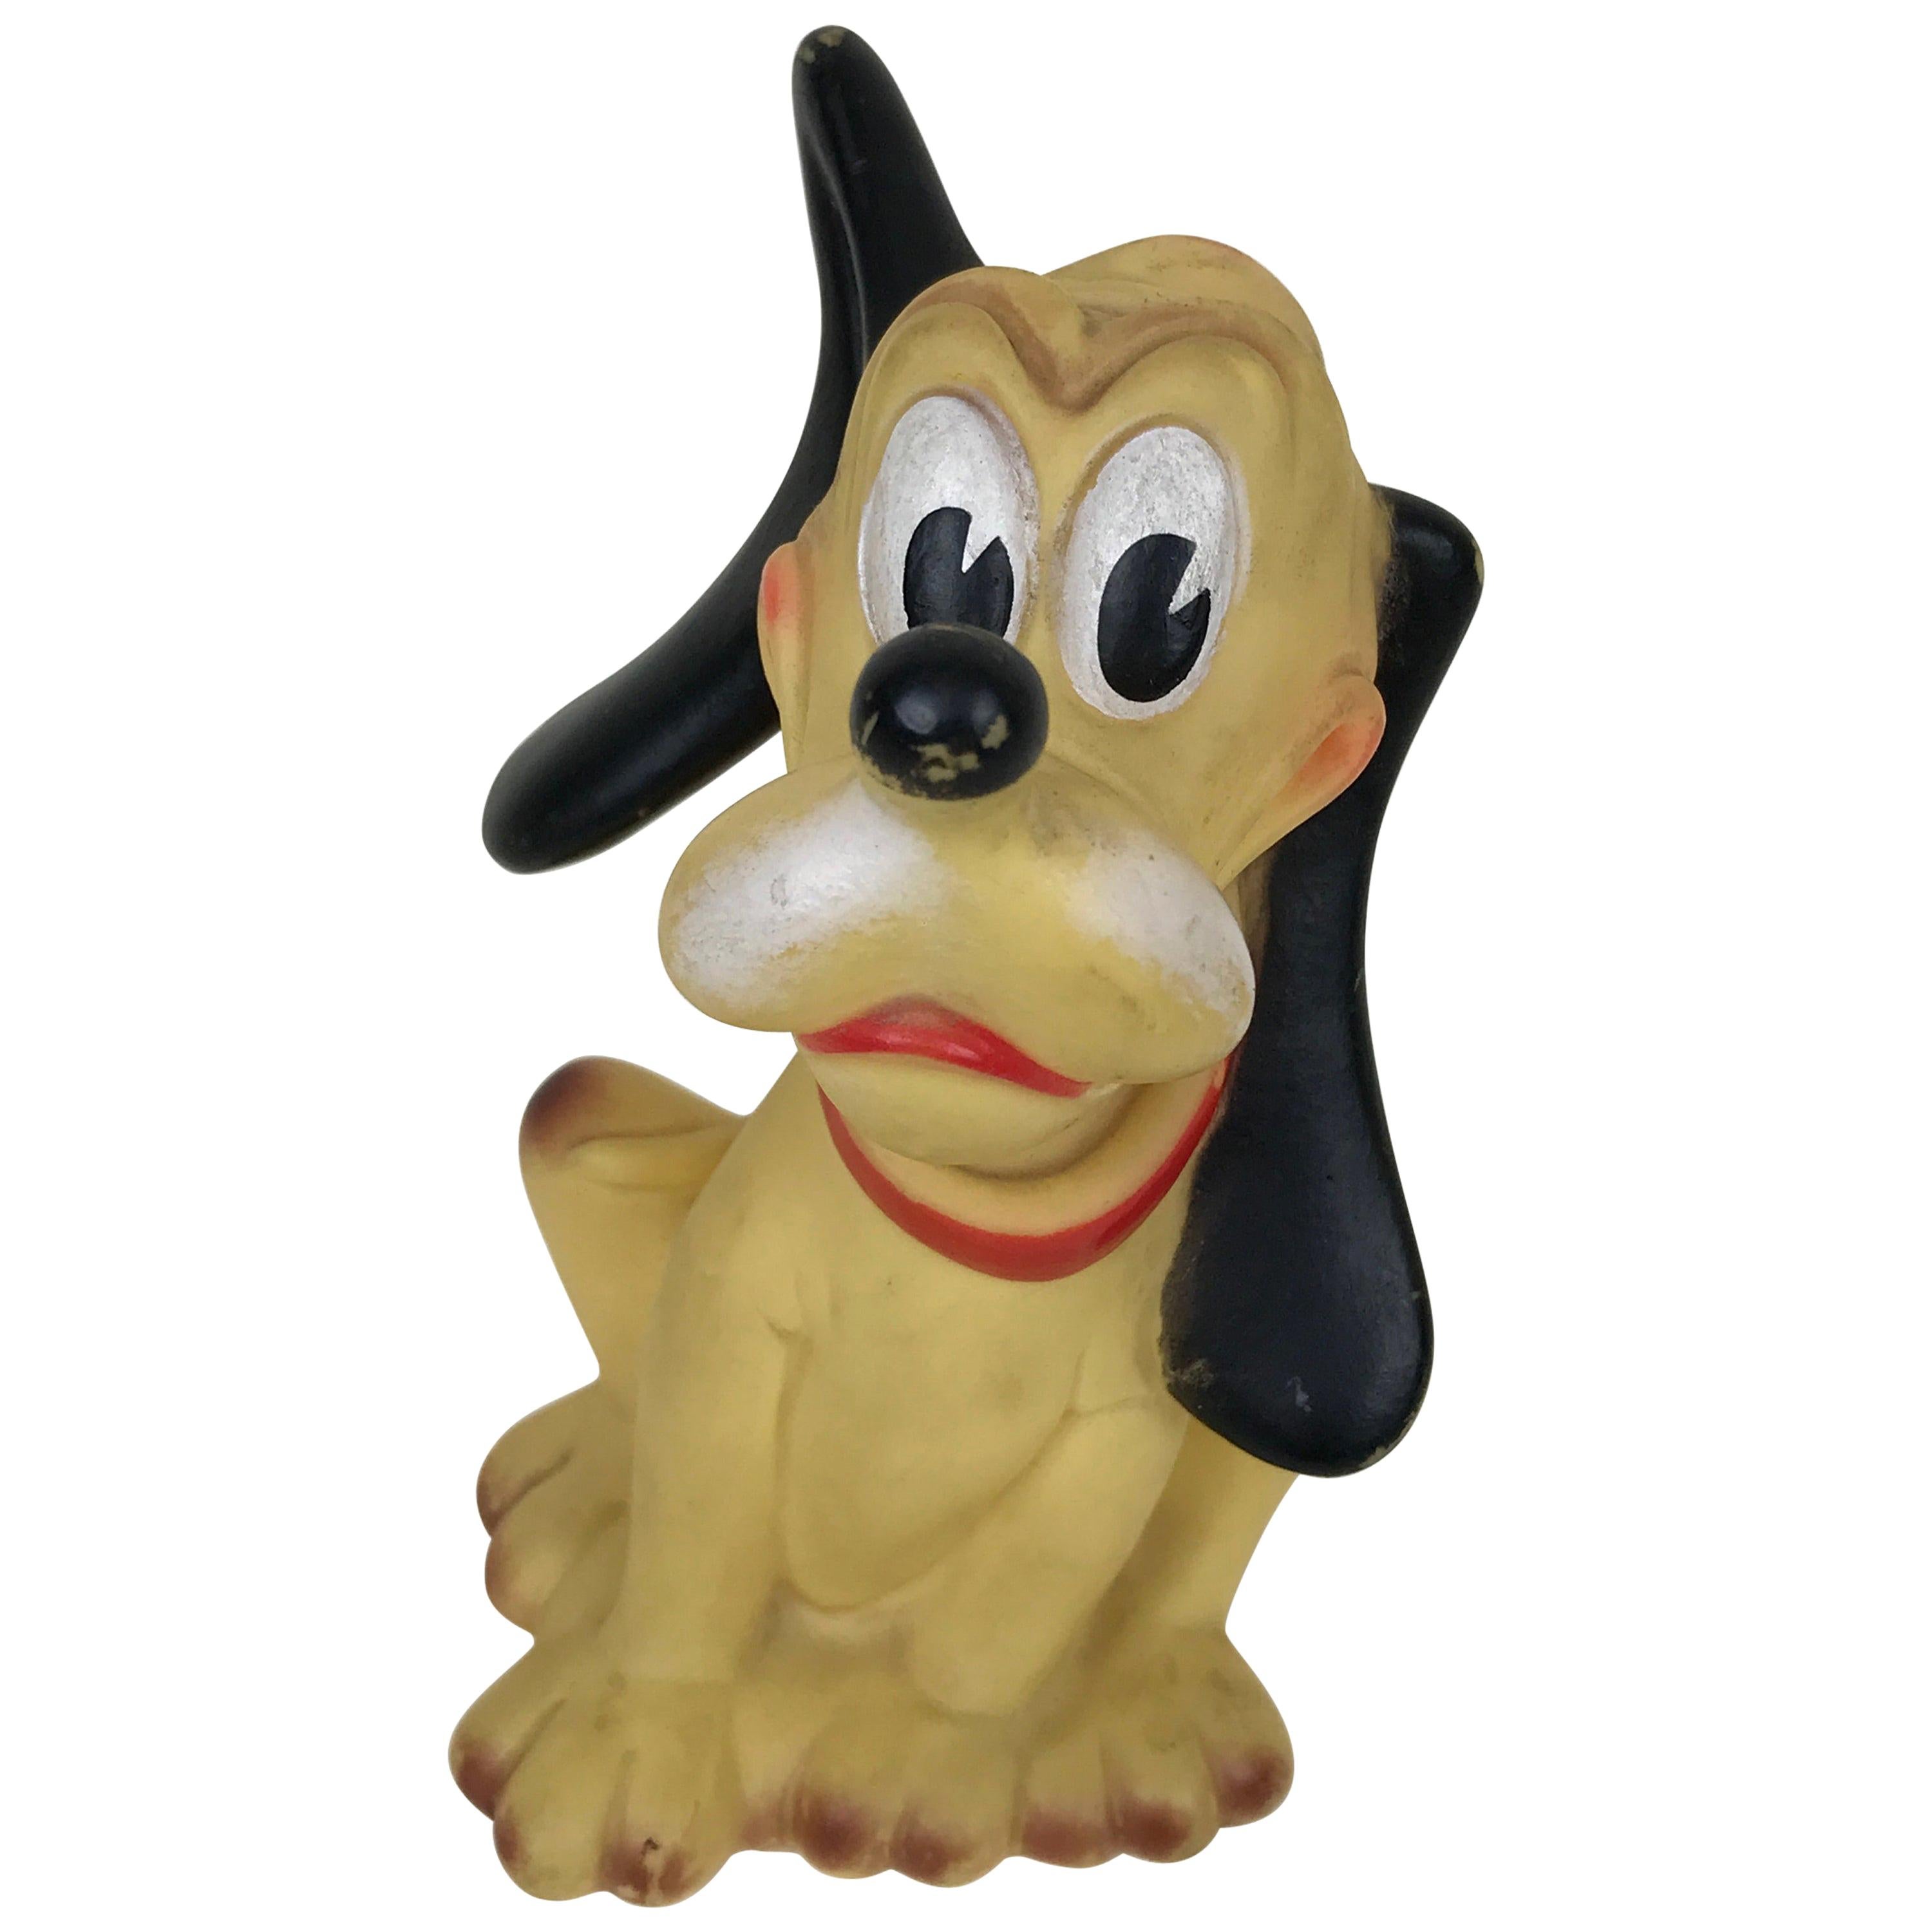 1960s Vintage Original Disney Pluto Rubber Squeak Toy Made in Italy Ledraplastic